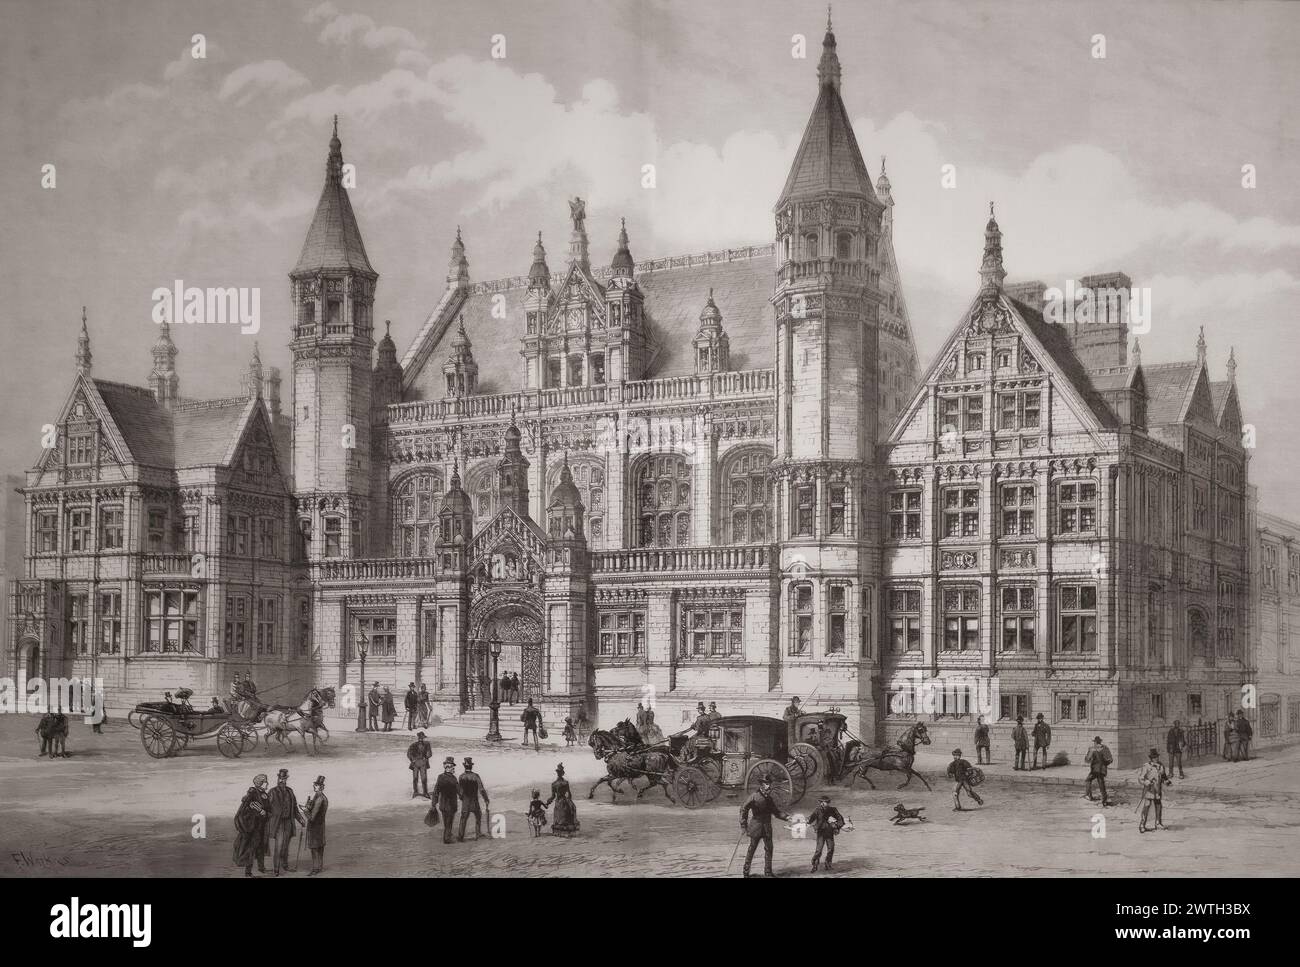 I nuovi tribunali di Birmingham, Inghilterra, la cui prima pietra fu posata dalla regina Vittoria nel 1887. Dal London Illustrated News, pubblicato il 26 marzo 1887. Foto Stock